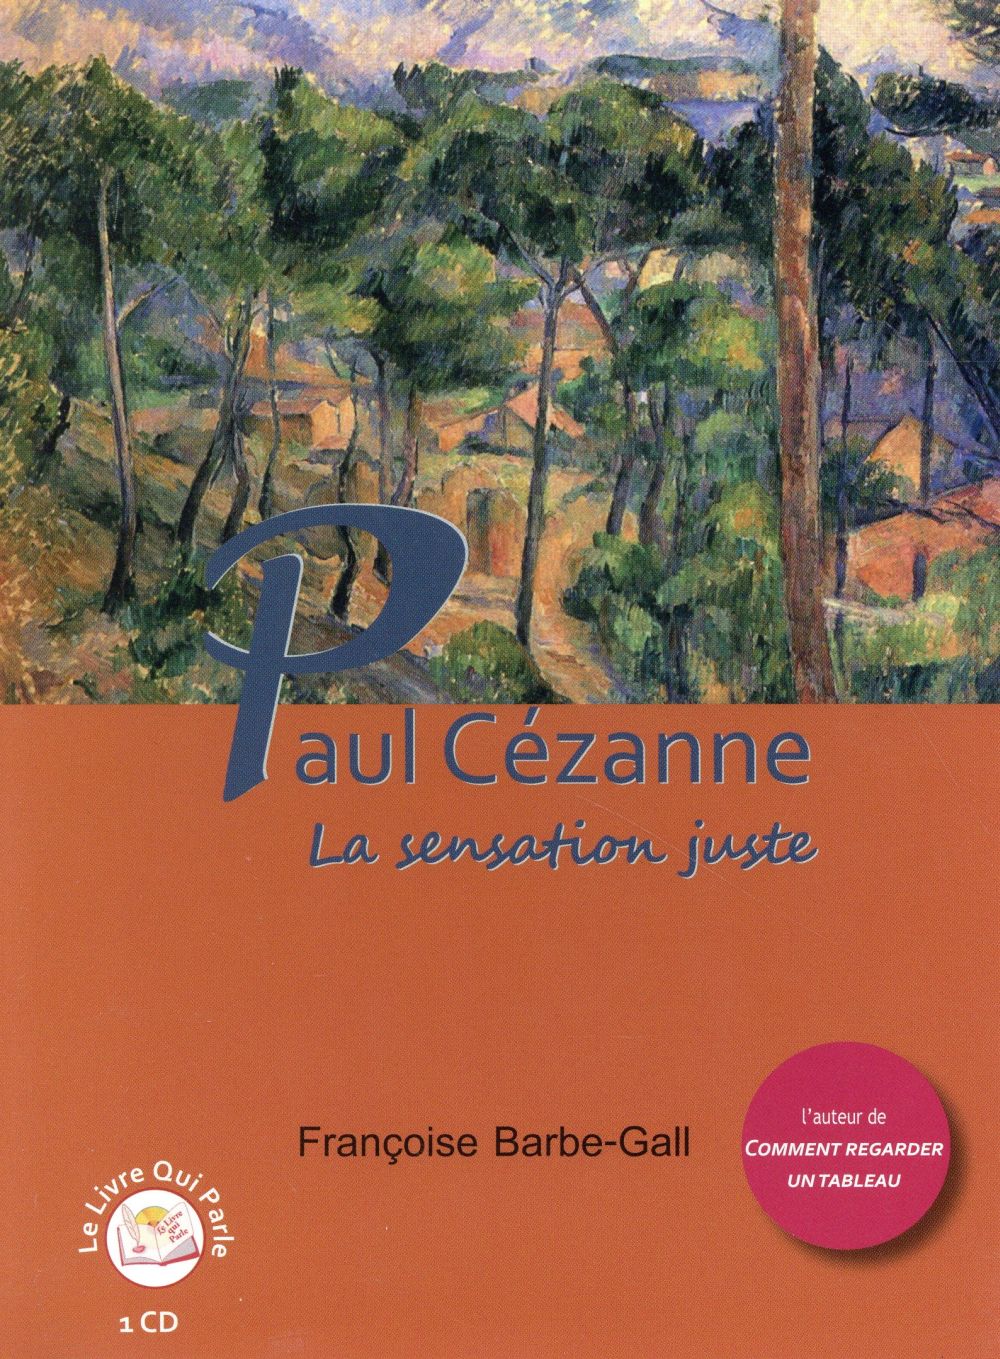 PAUL CEZANNE (1 CD)